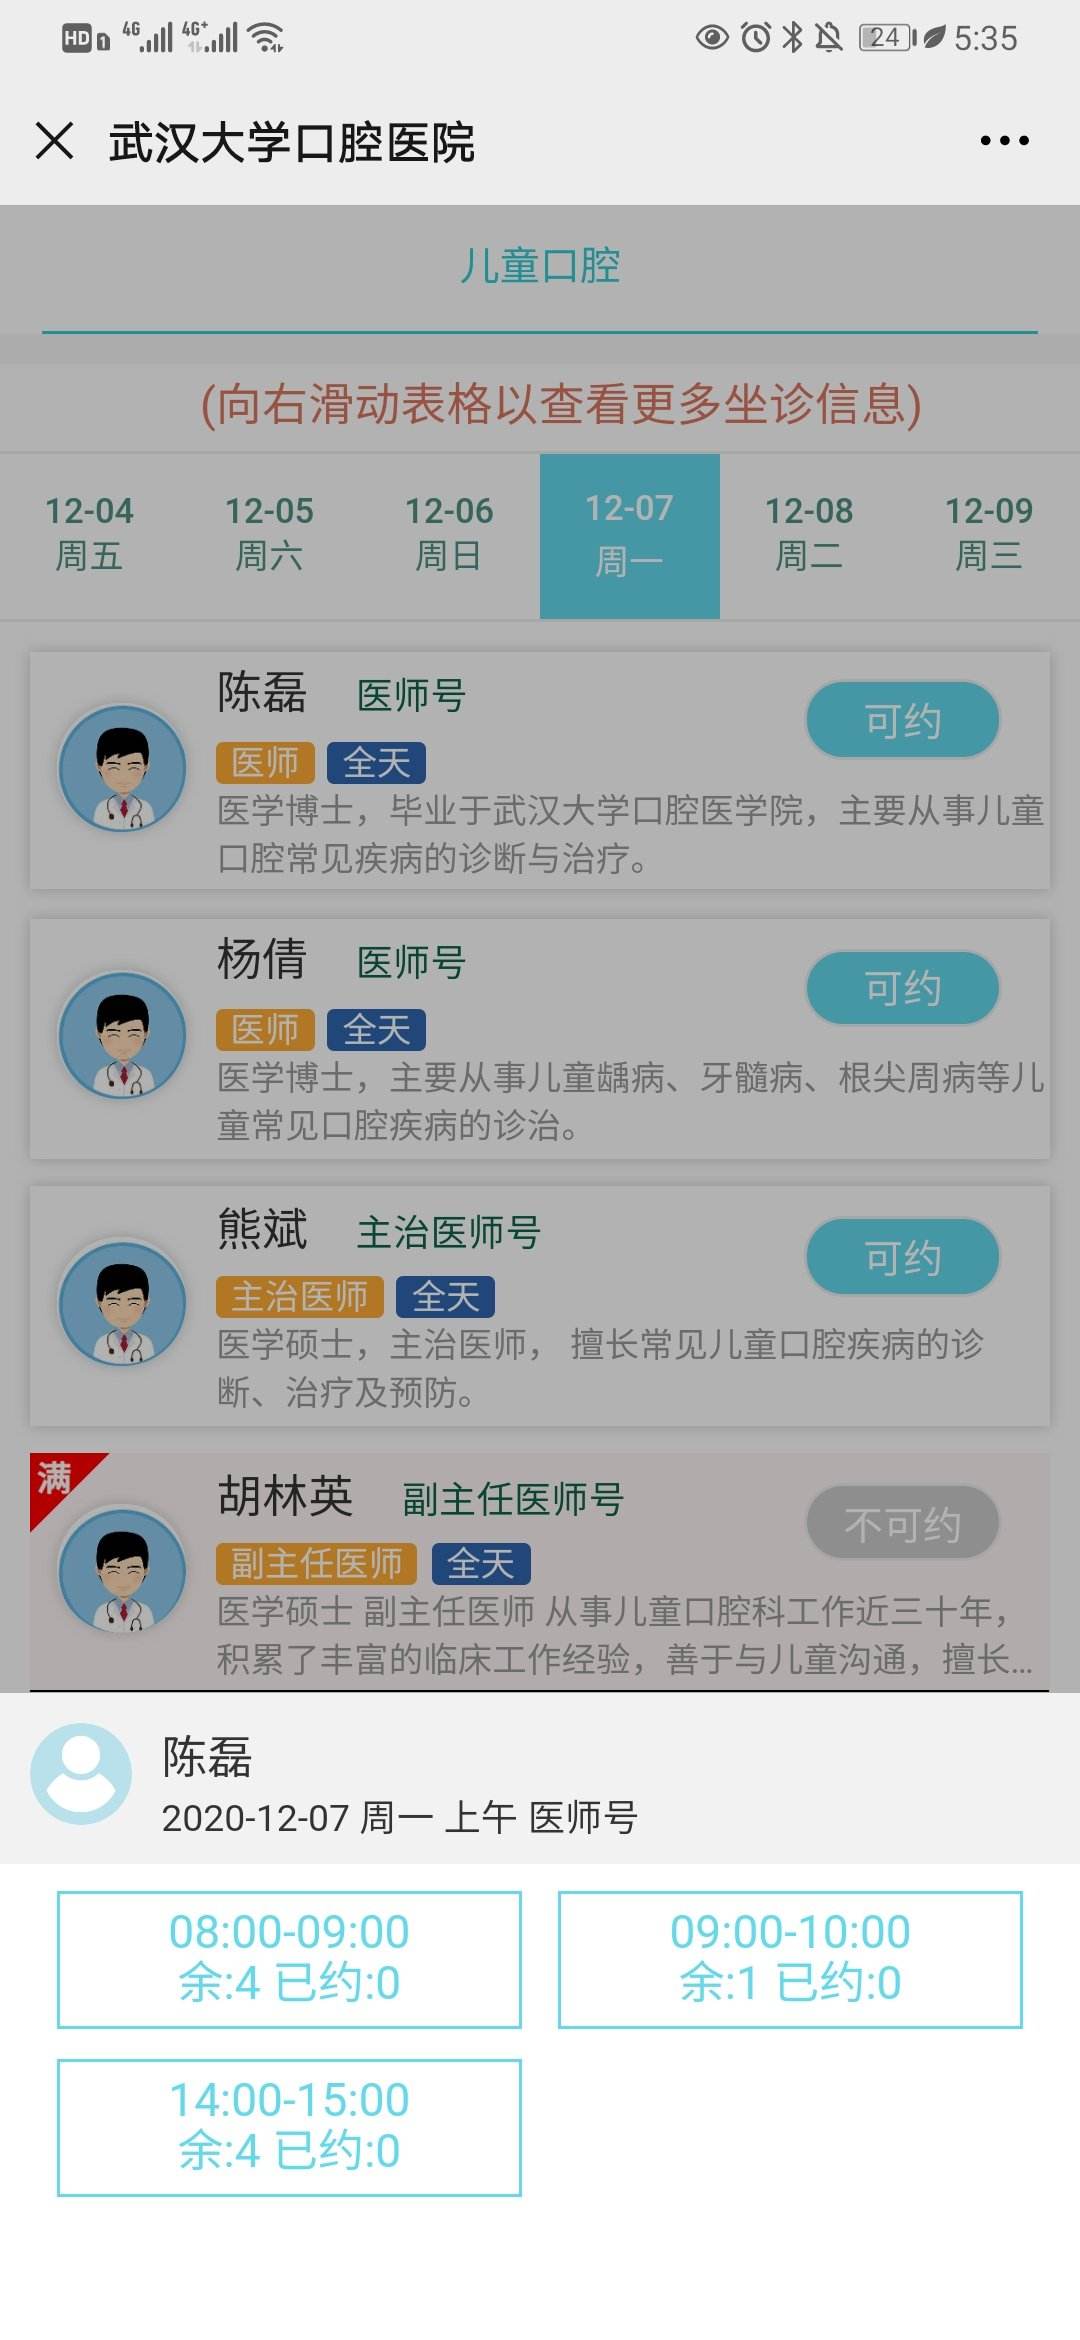 北京大学口腔医院号贩子挂号,确实能挂到号!的简单介绍